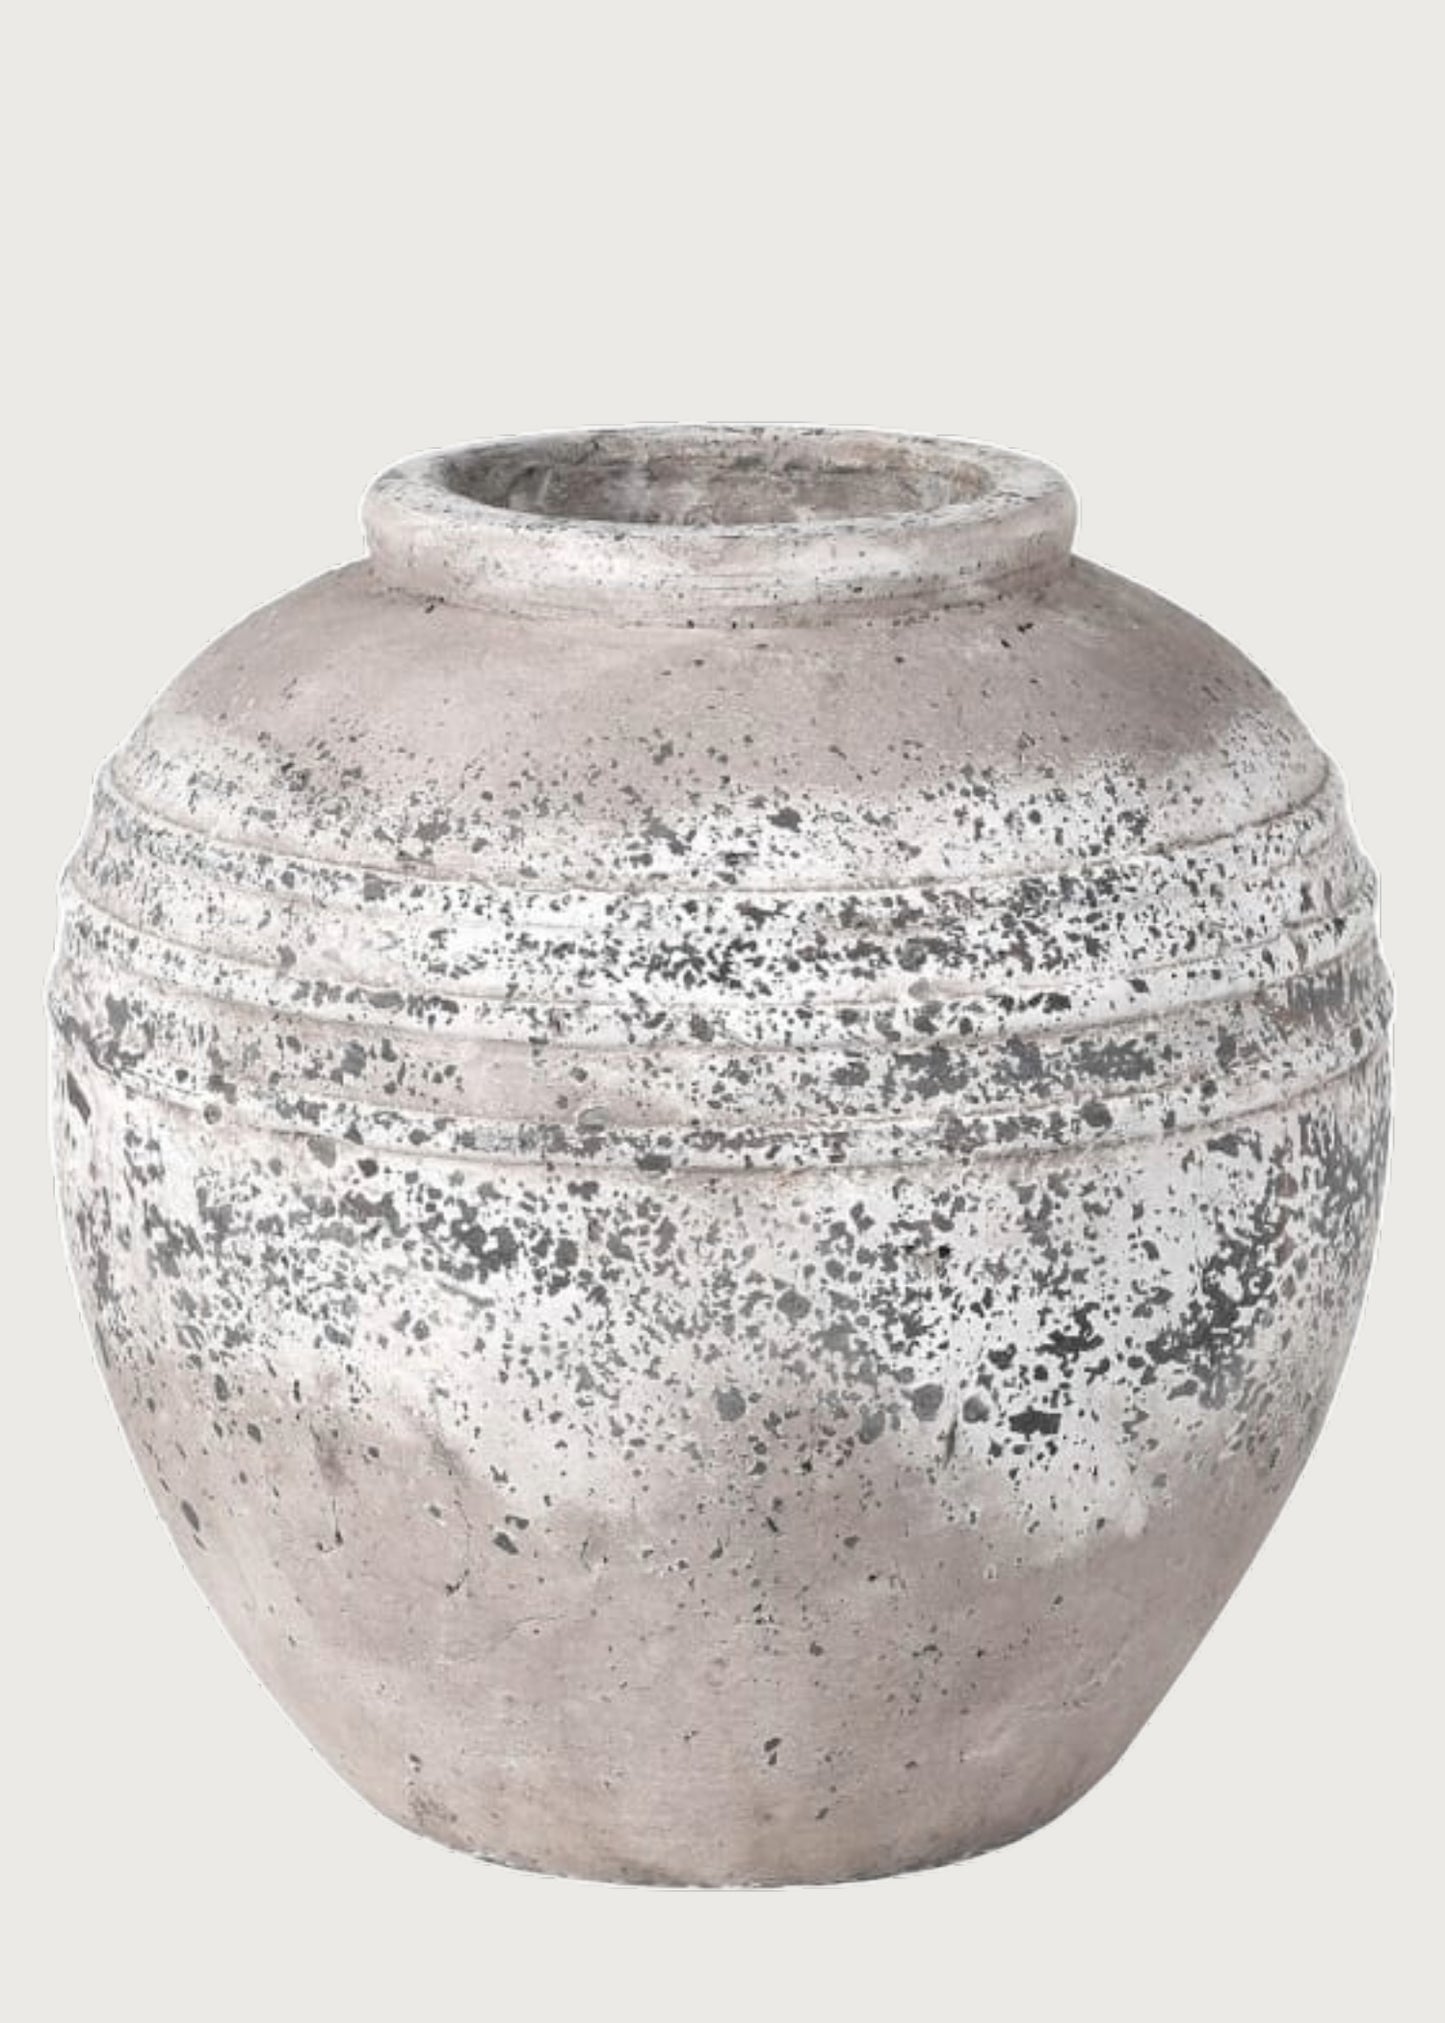 Penmon Stone Effect Vase